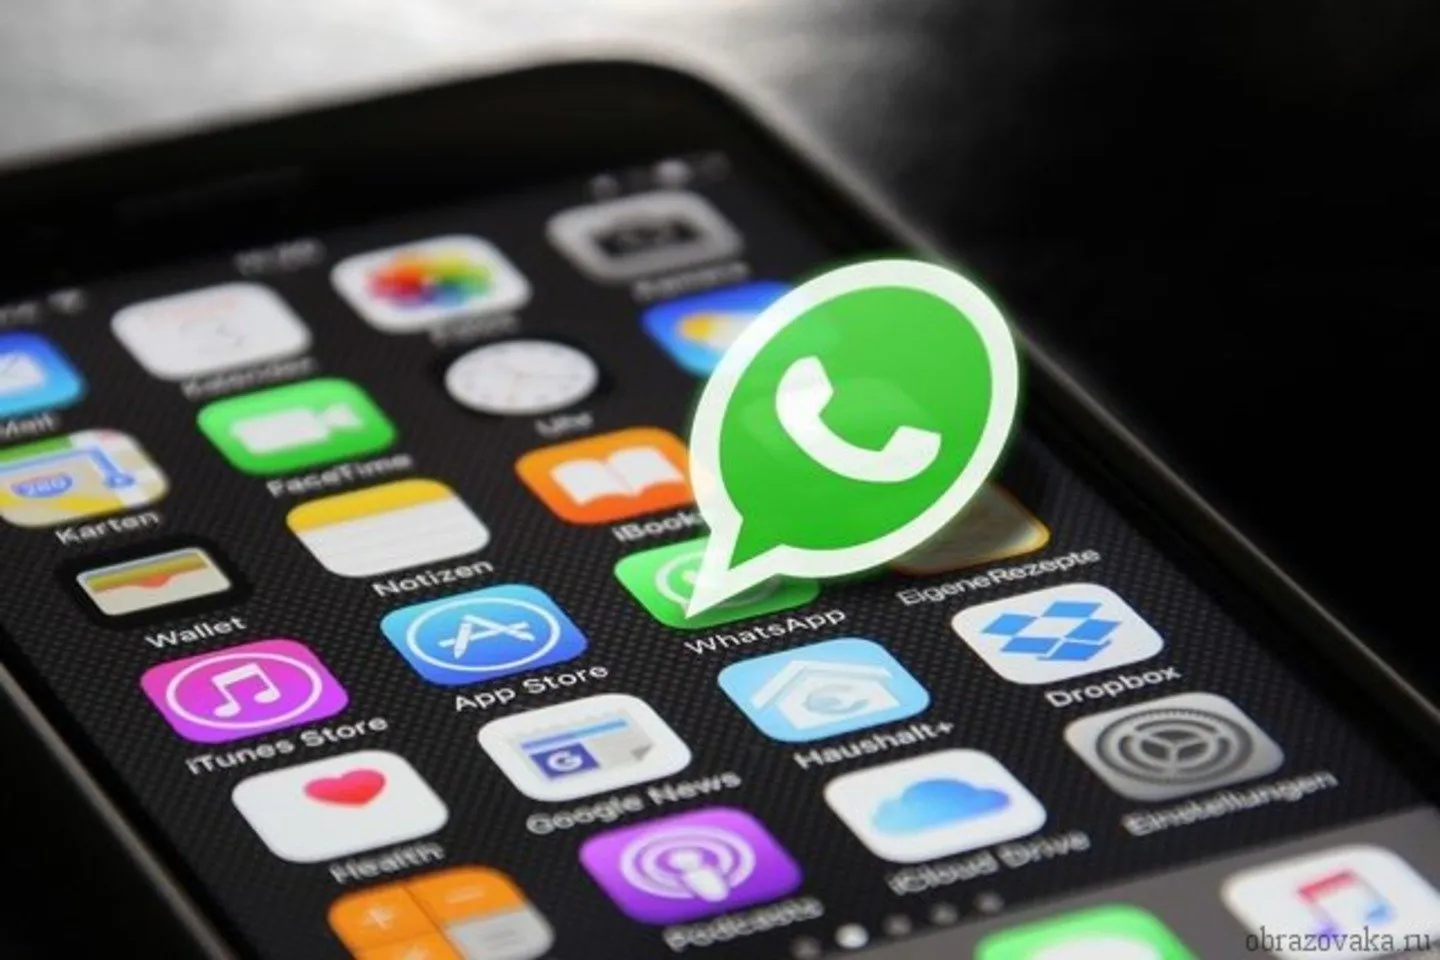 Новости мира / Интересные новости / Проблемы с безопасностью WhatsApp: хакеры могут получить все данные с телефона